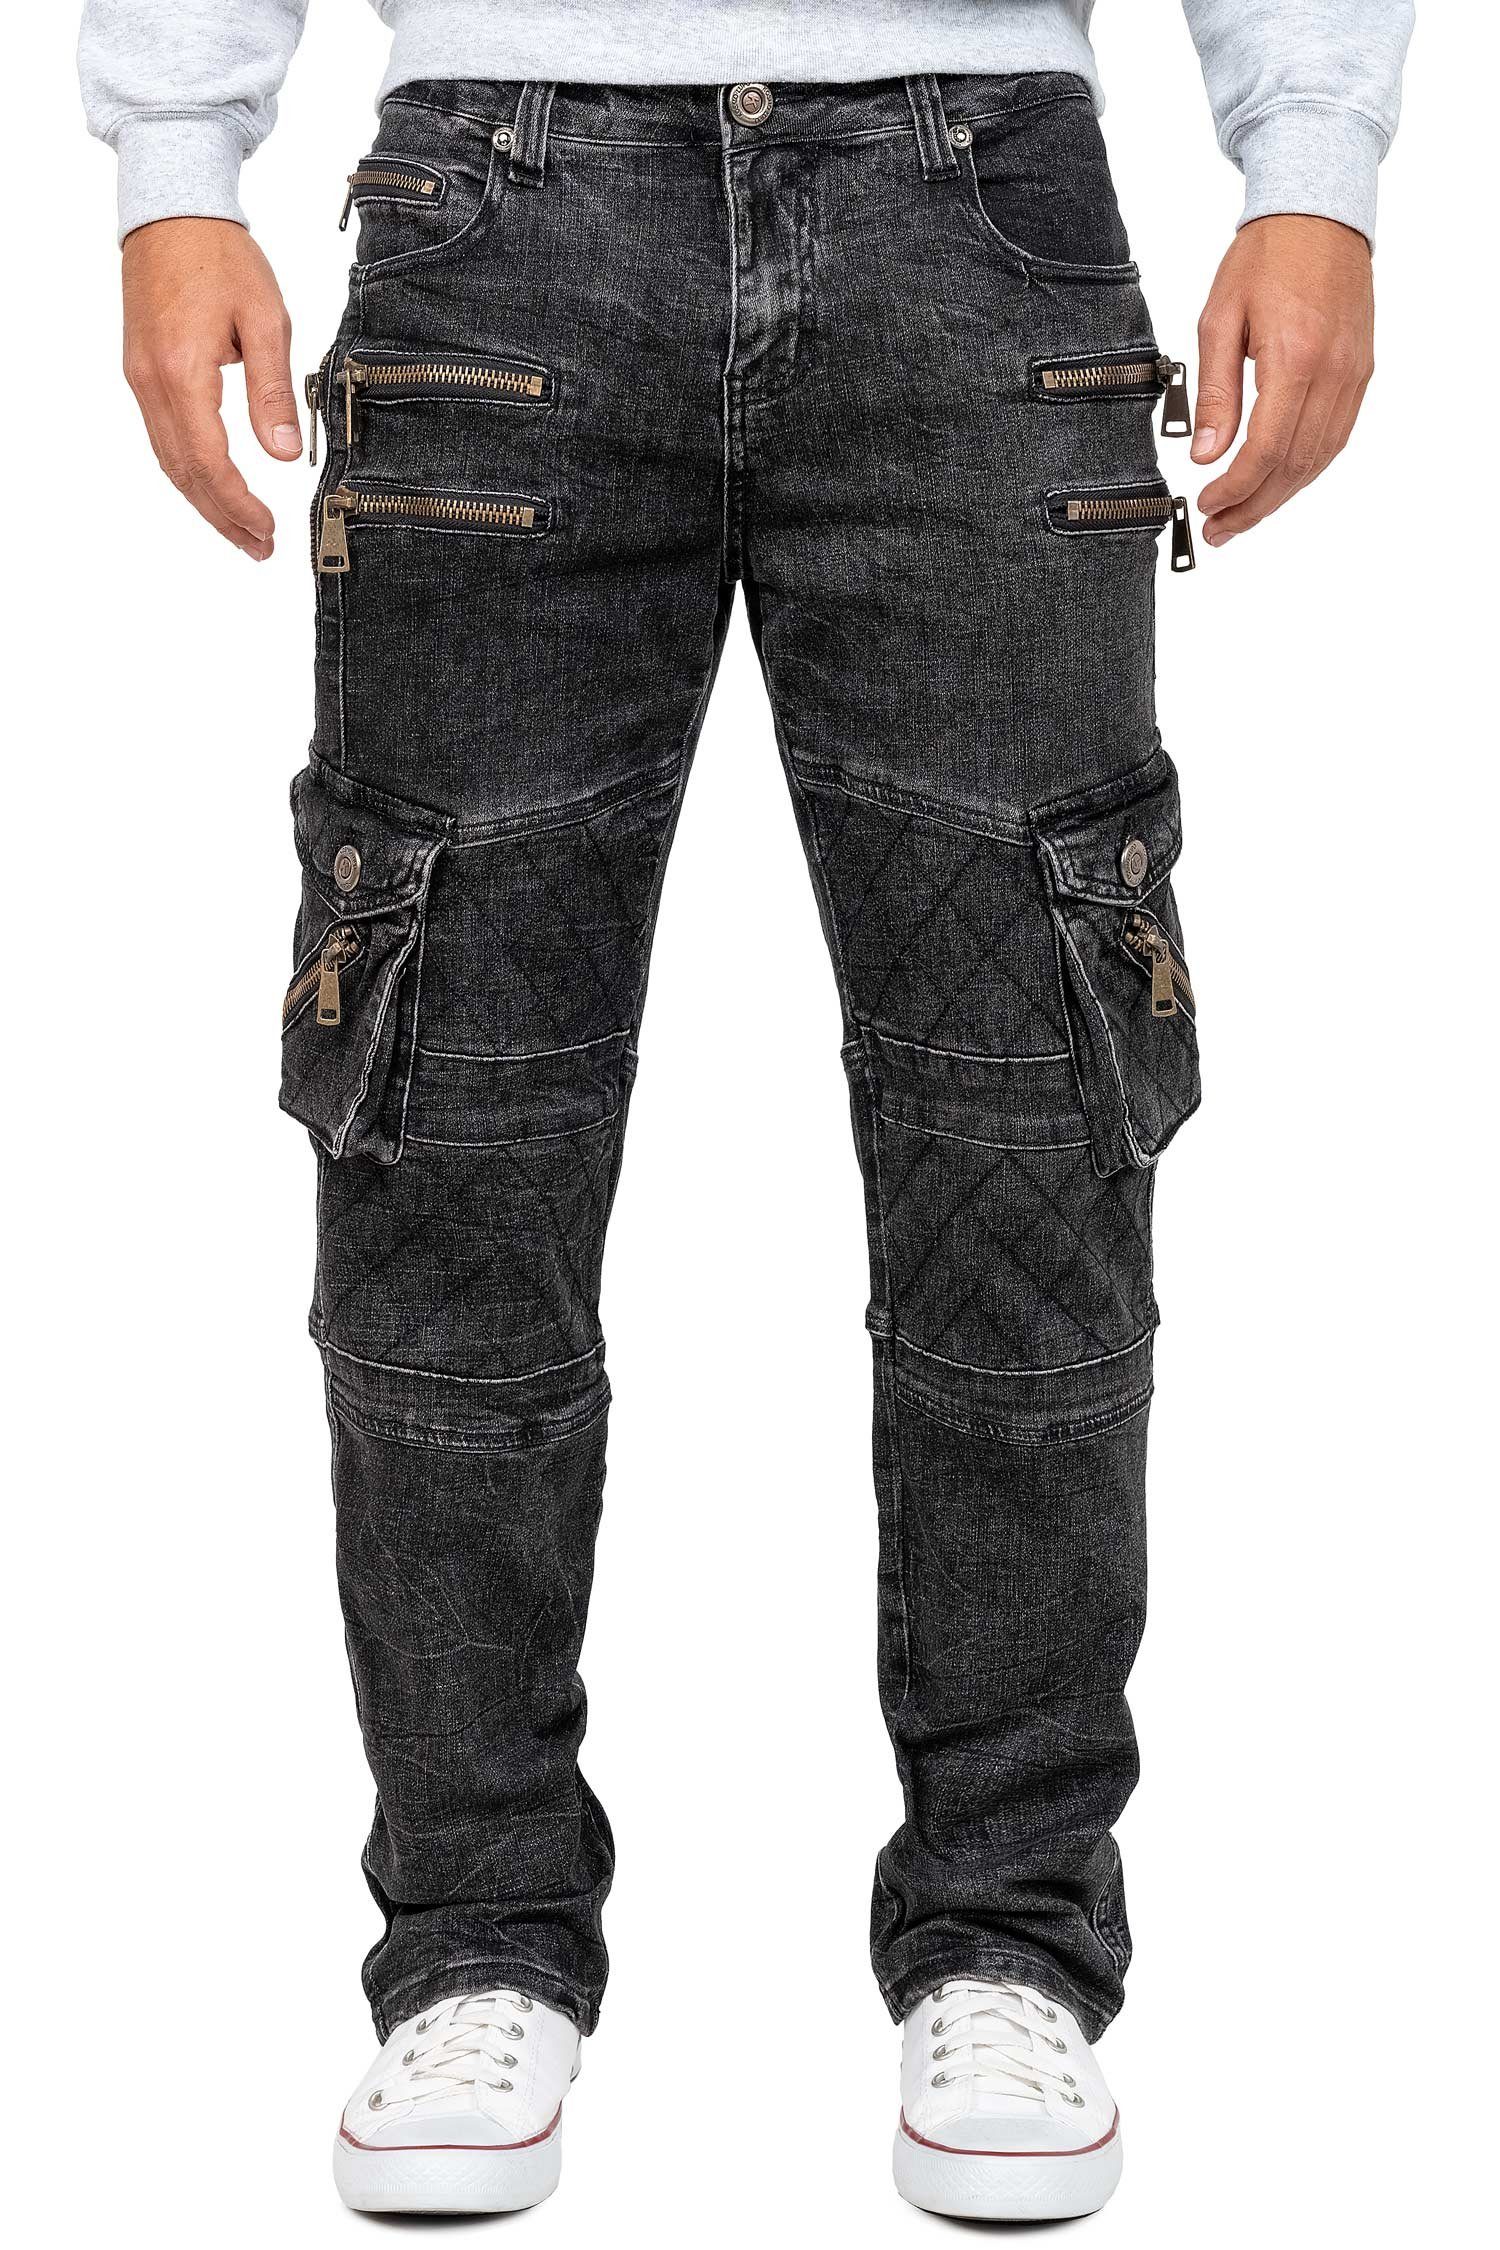 Kosmo Lupo 5-Pocket-Jeans Auffällige Herren Hose BA-KM060 mit Verzierungen und Nieten schwarz